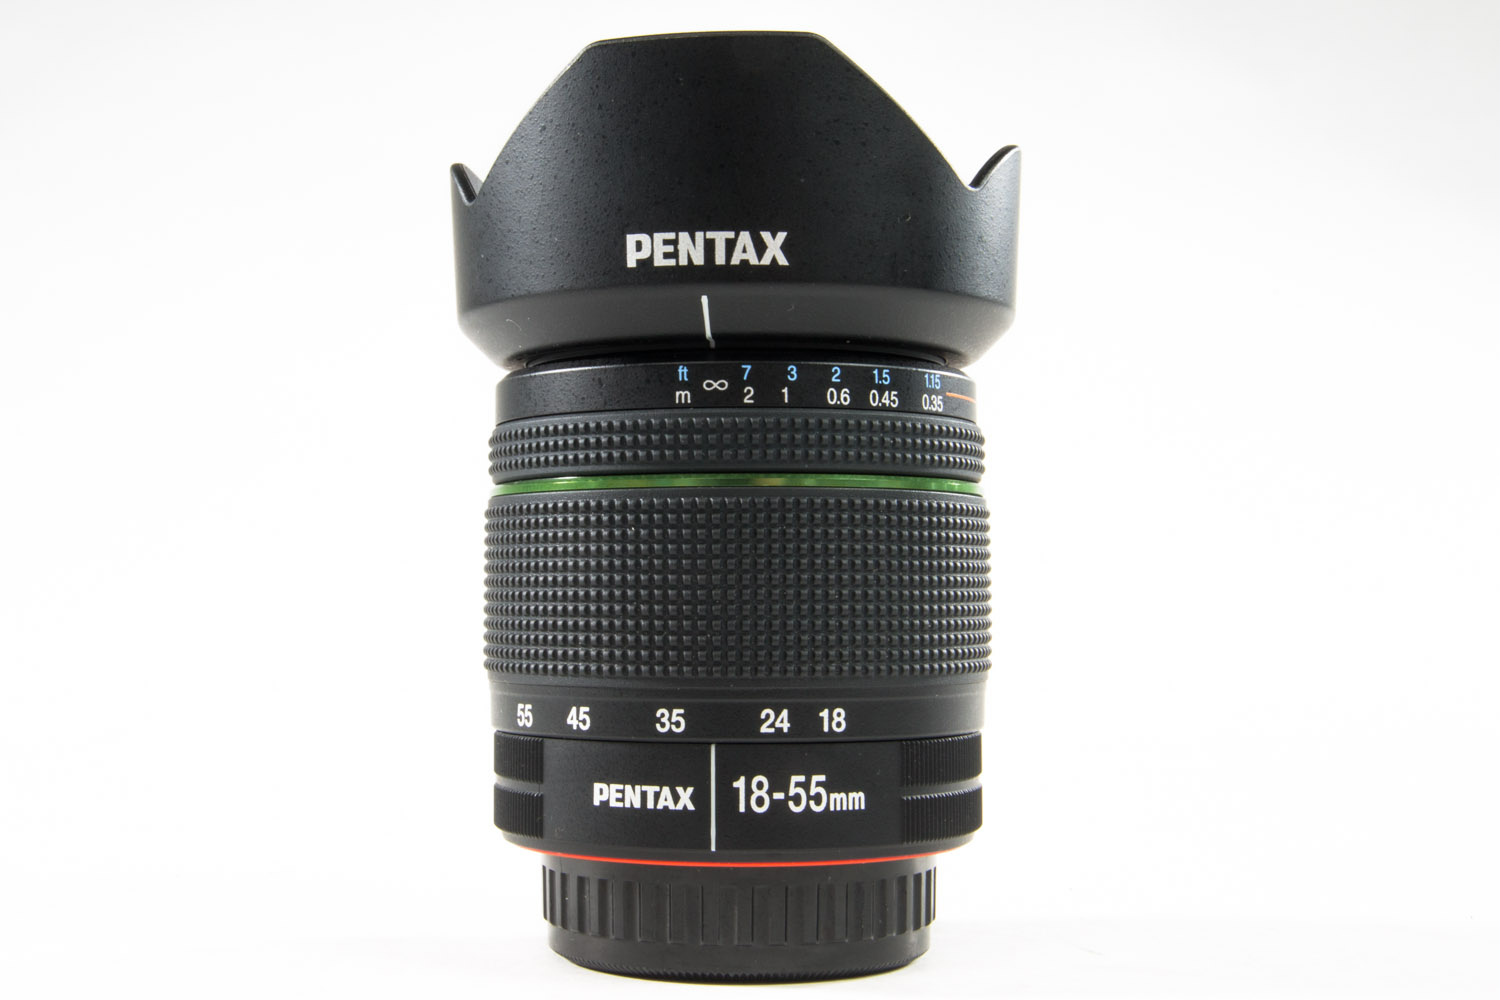 Pentax 18-55mm AL WR gebraucht Bild 01